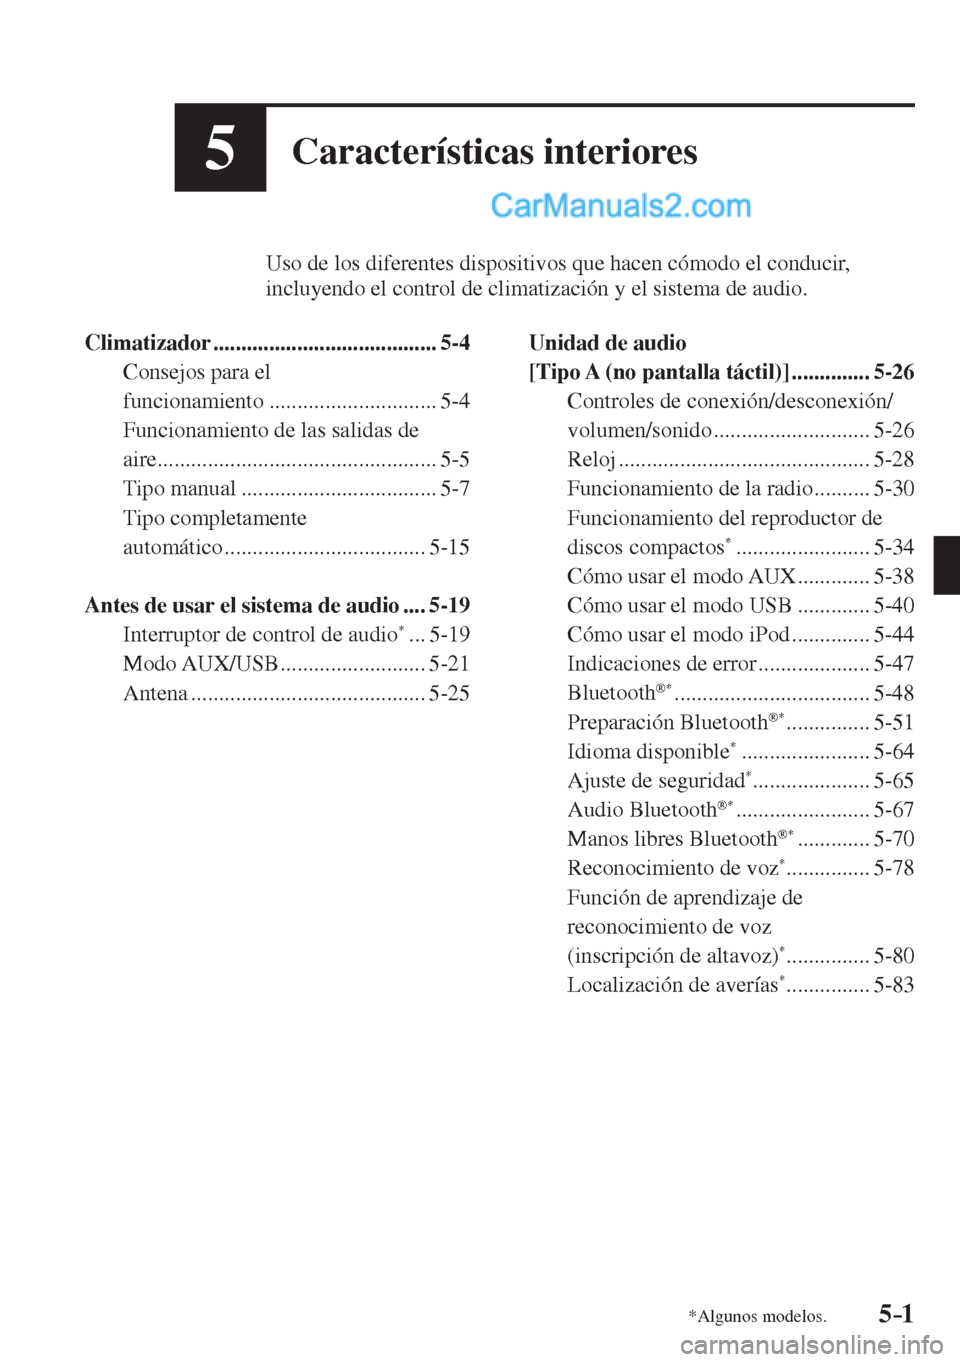 MAZDA MODEL 2 2017  Manual del propietario (in Spanish) 5–1*Algunos modelos.
5Características interiores
          Uso de los diferentes dispositivos que hacen cómodo el conducir, 
incluyendo el control de climatización y el sistema de audio.
  
   Cl